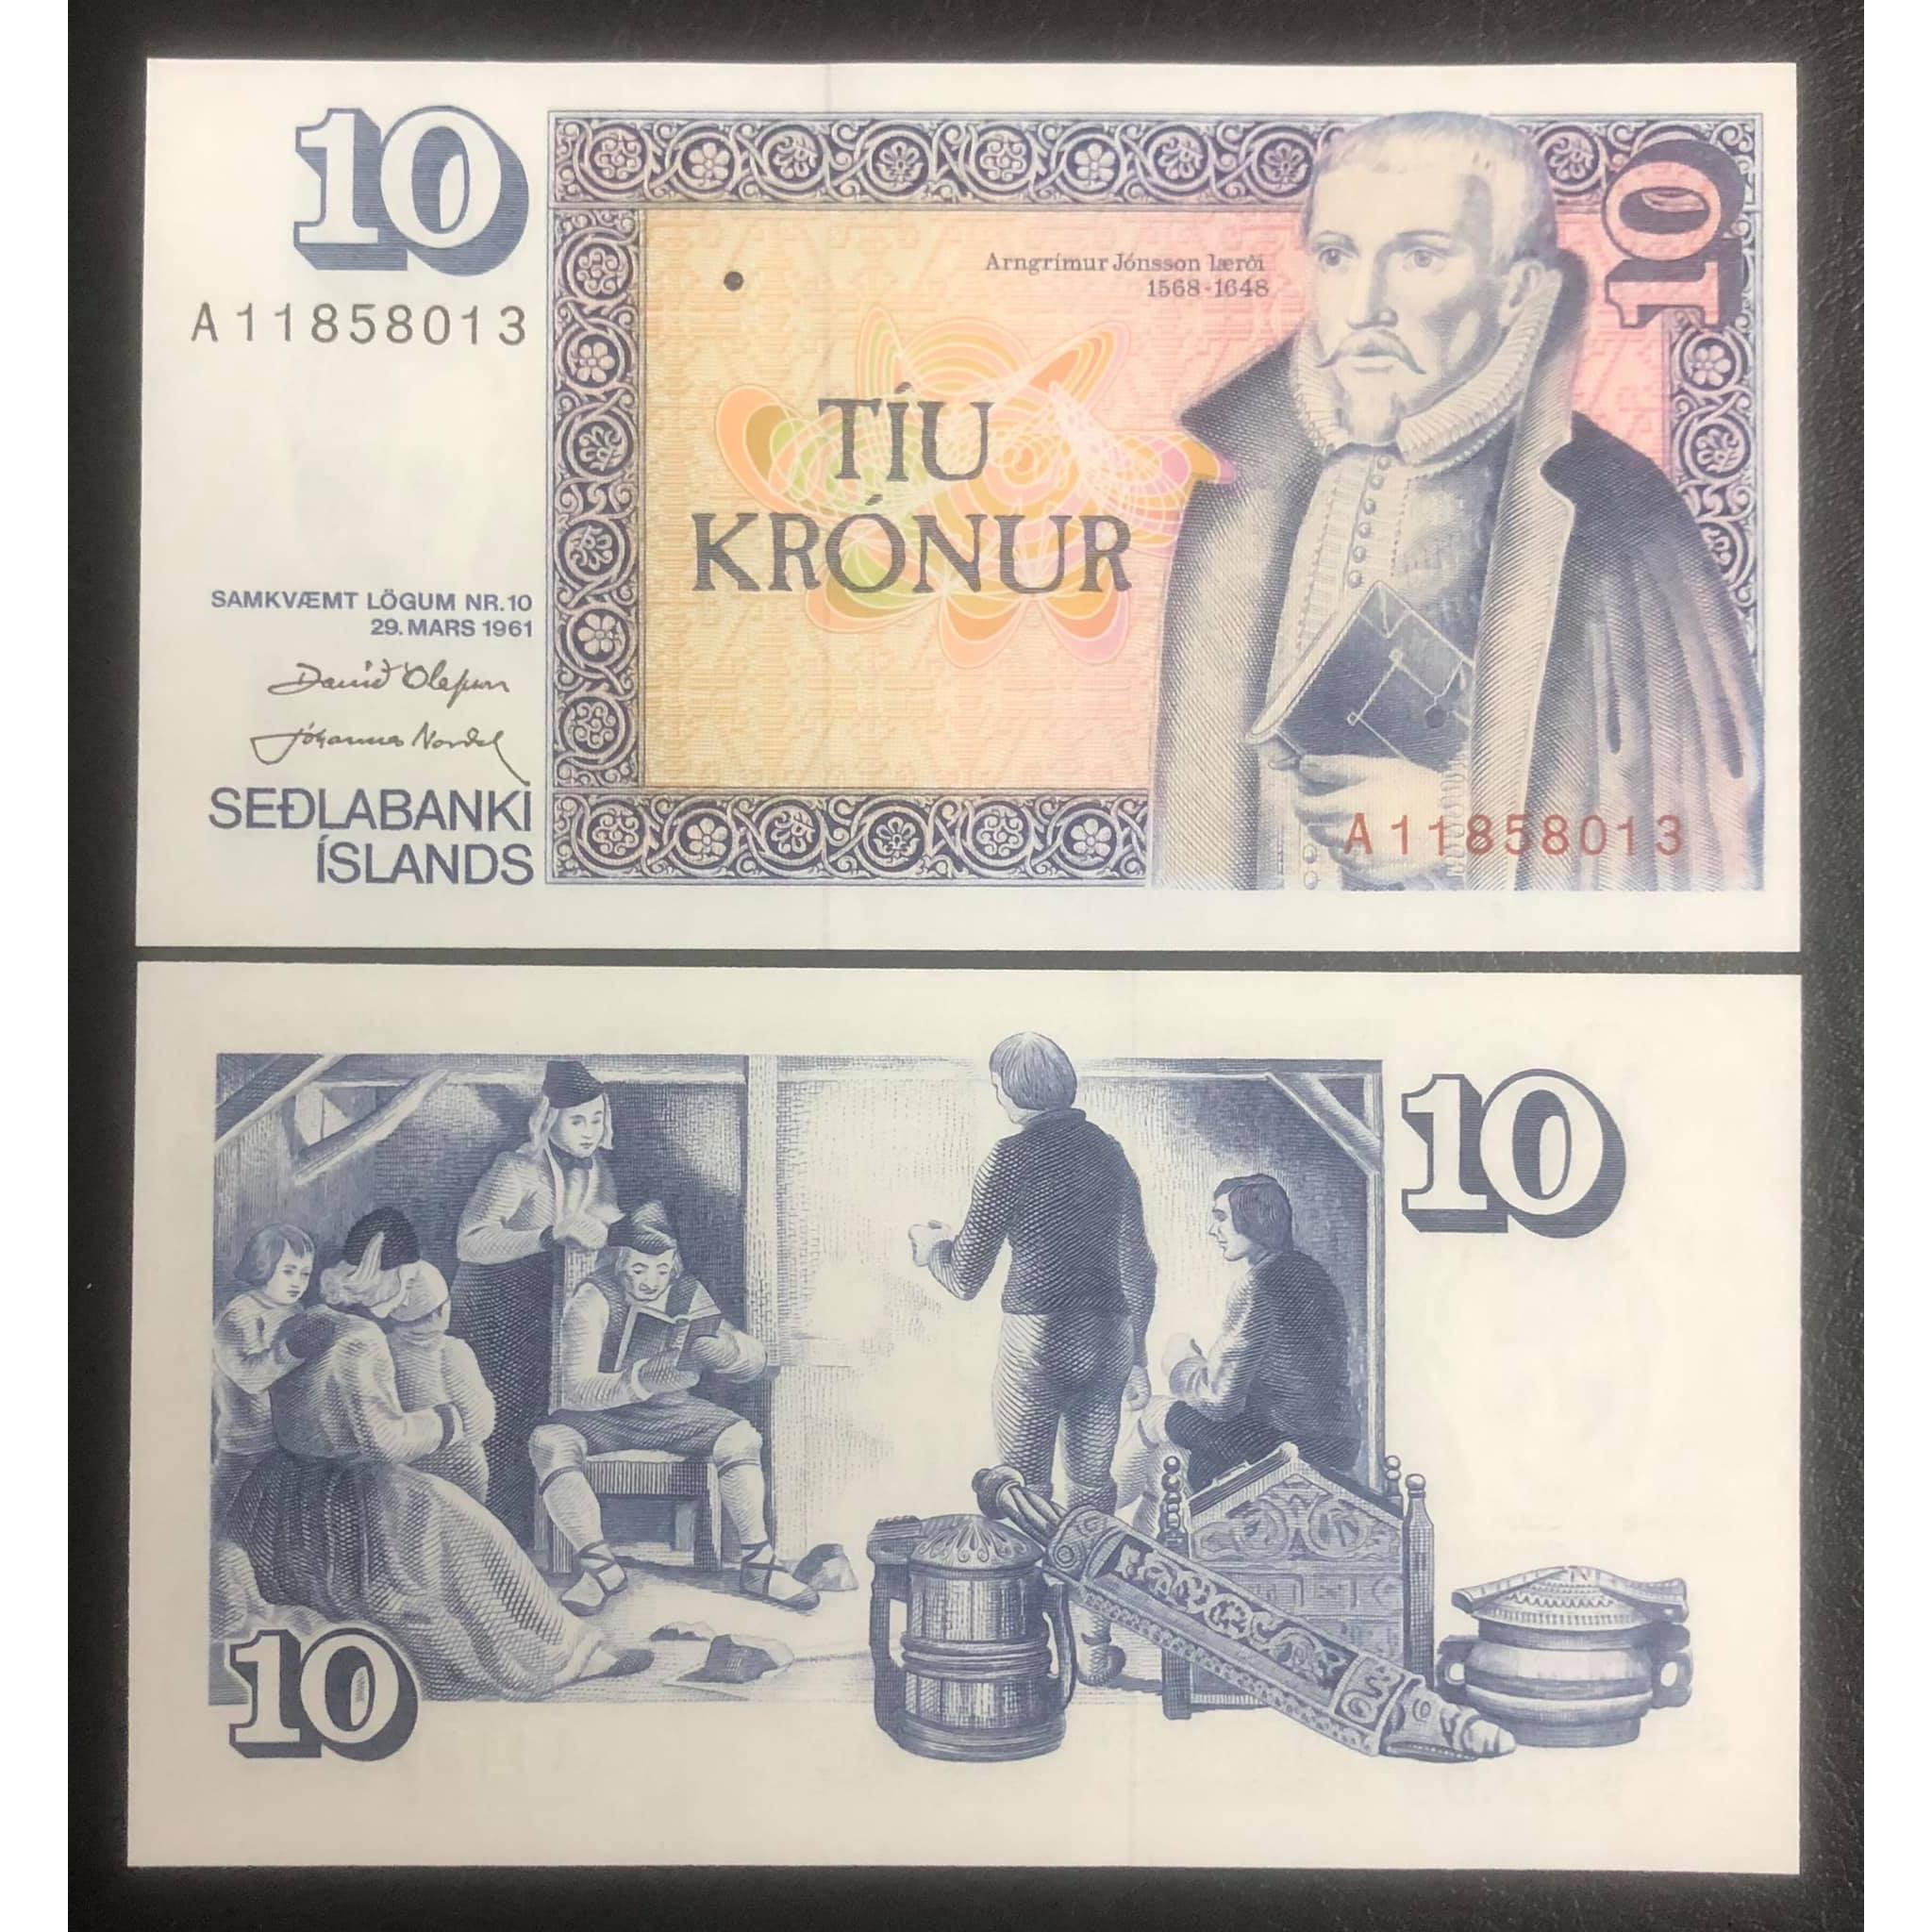 Tiền Iceland 10 kronur, quốc gia châu Âu sưu tầm